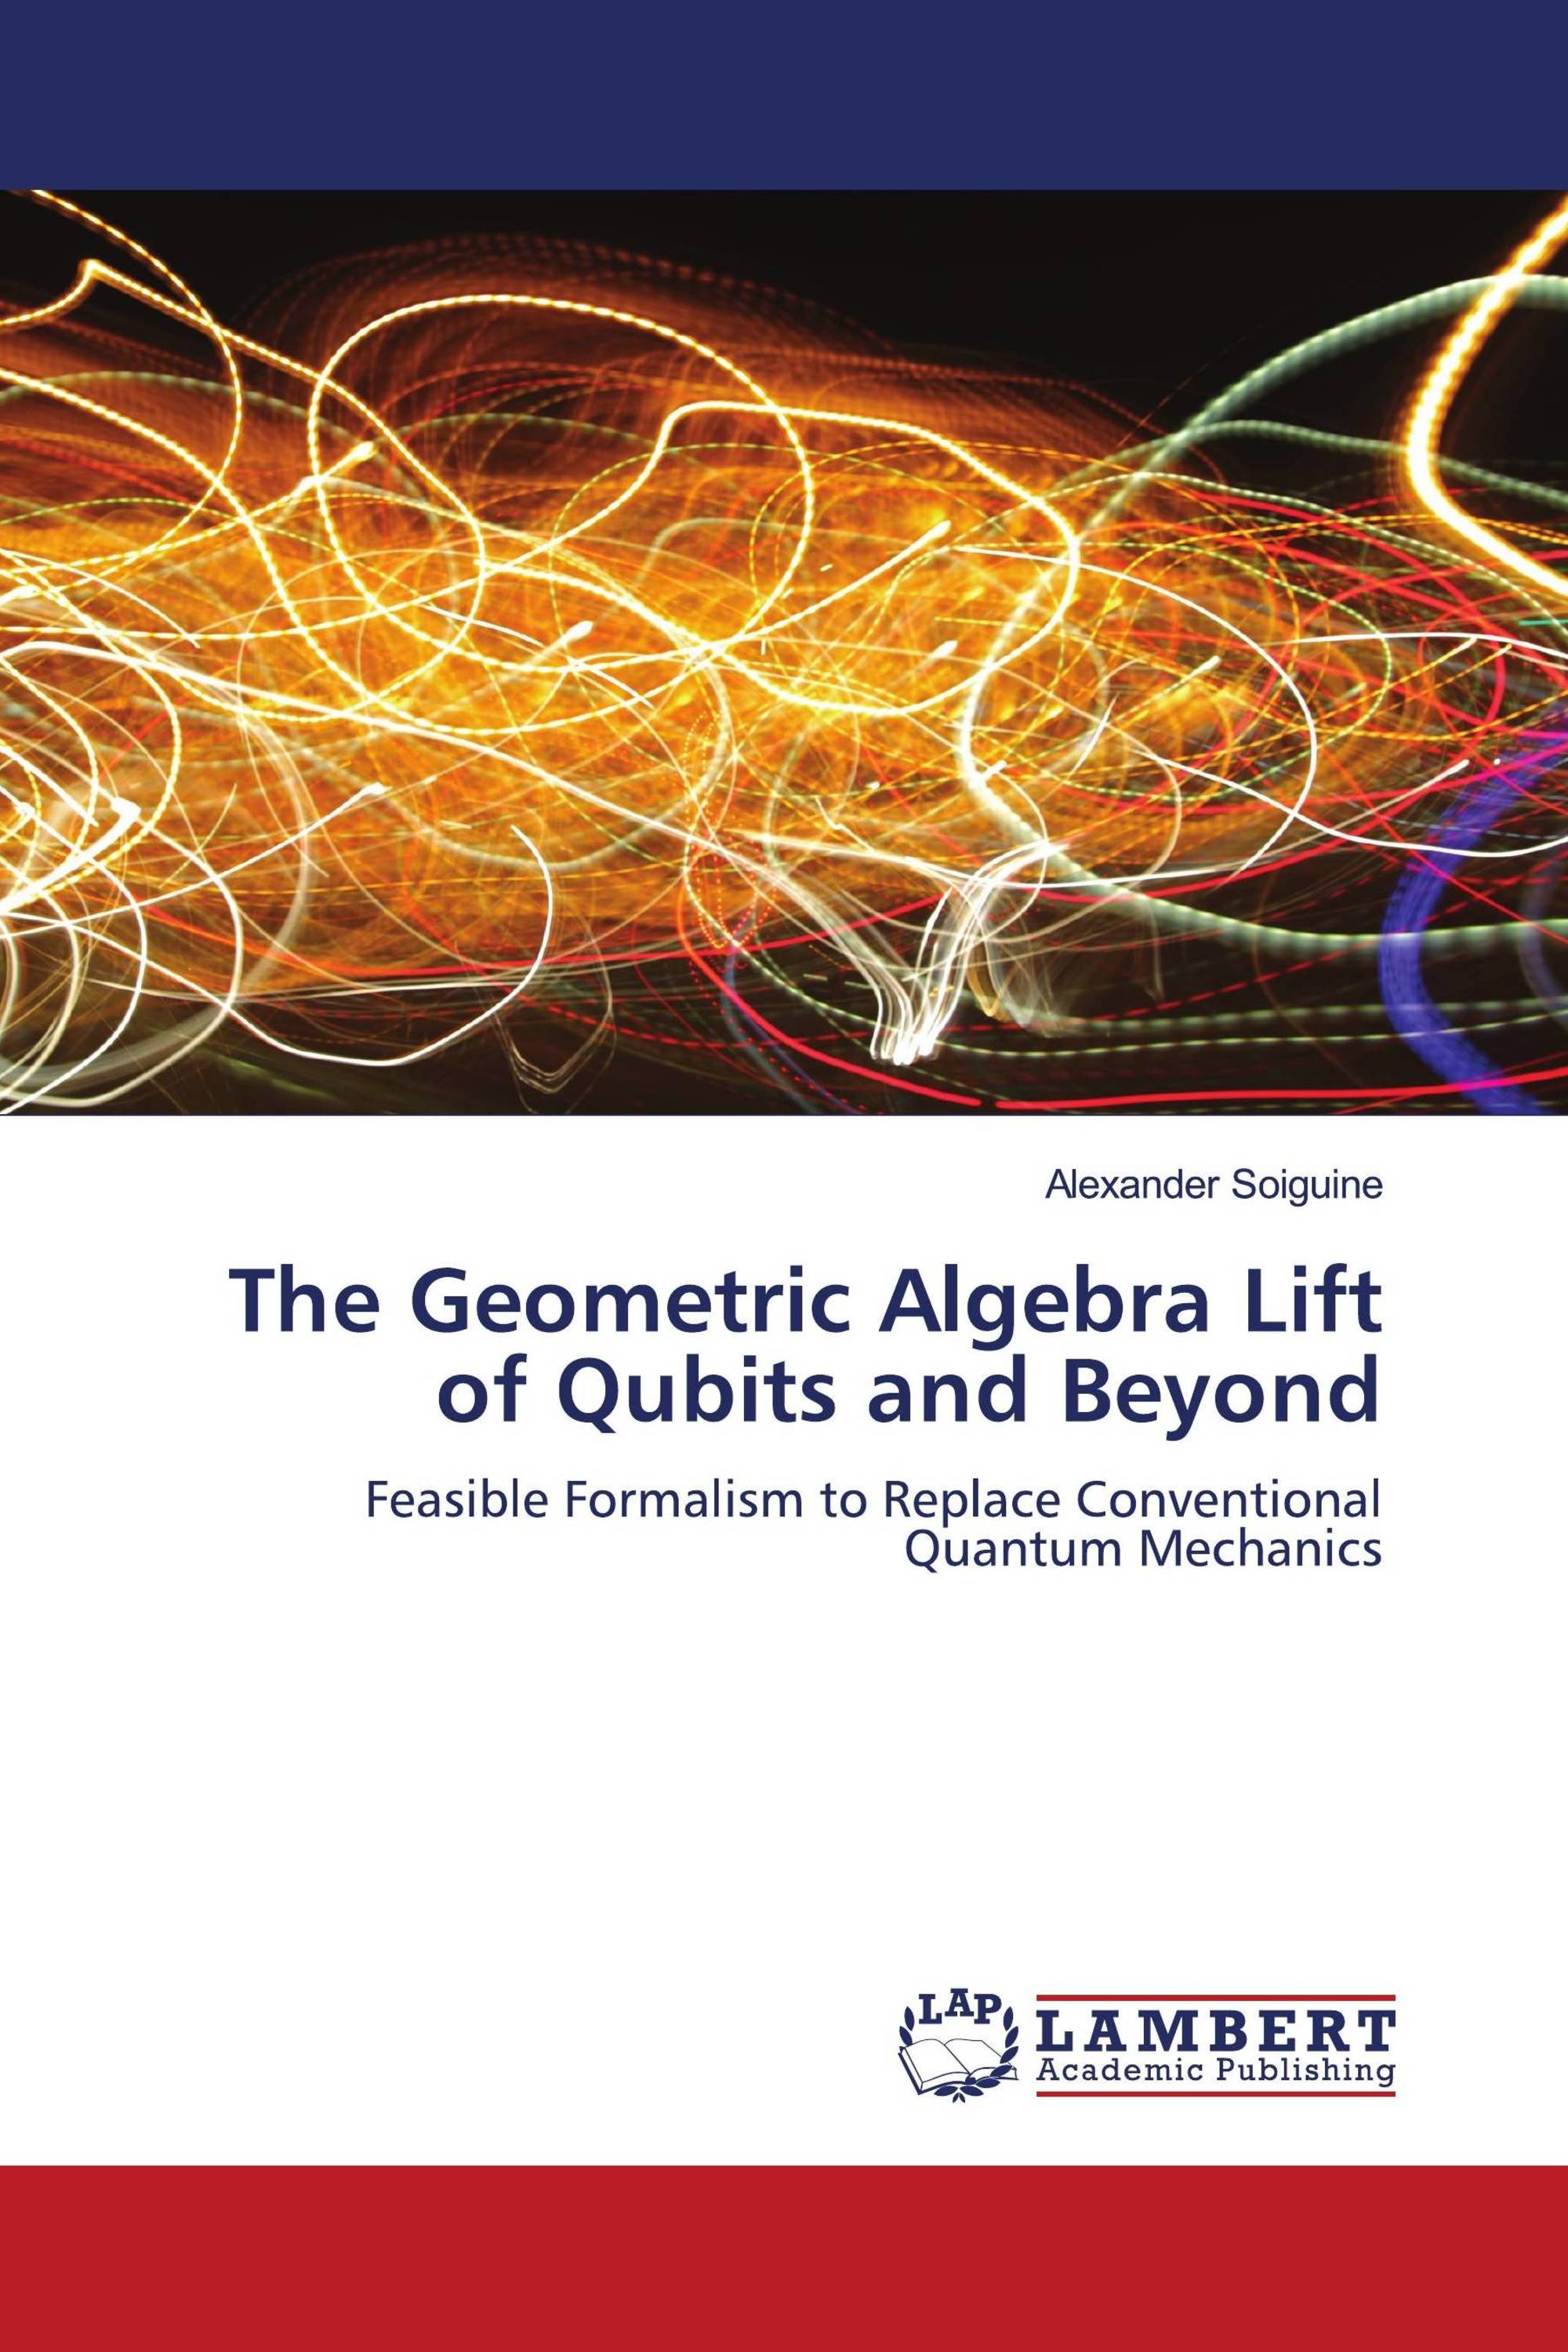 The Geometric Algebra Lift of Qubits and Beyond